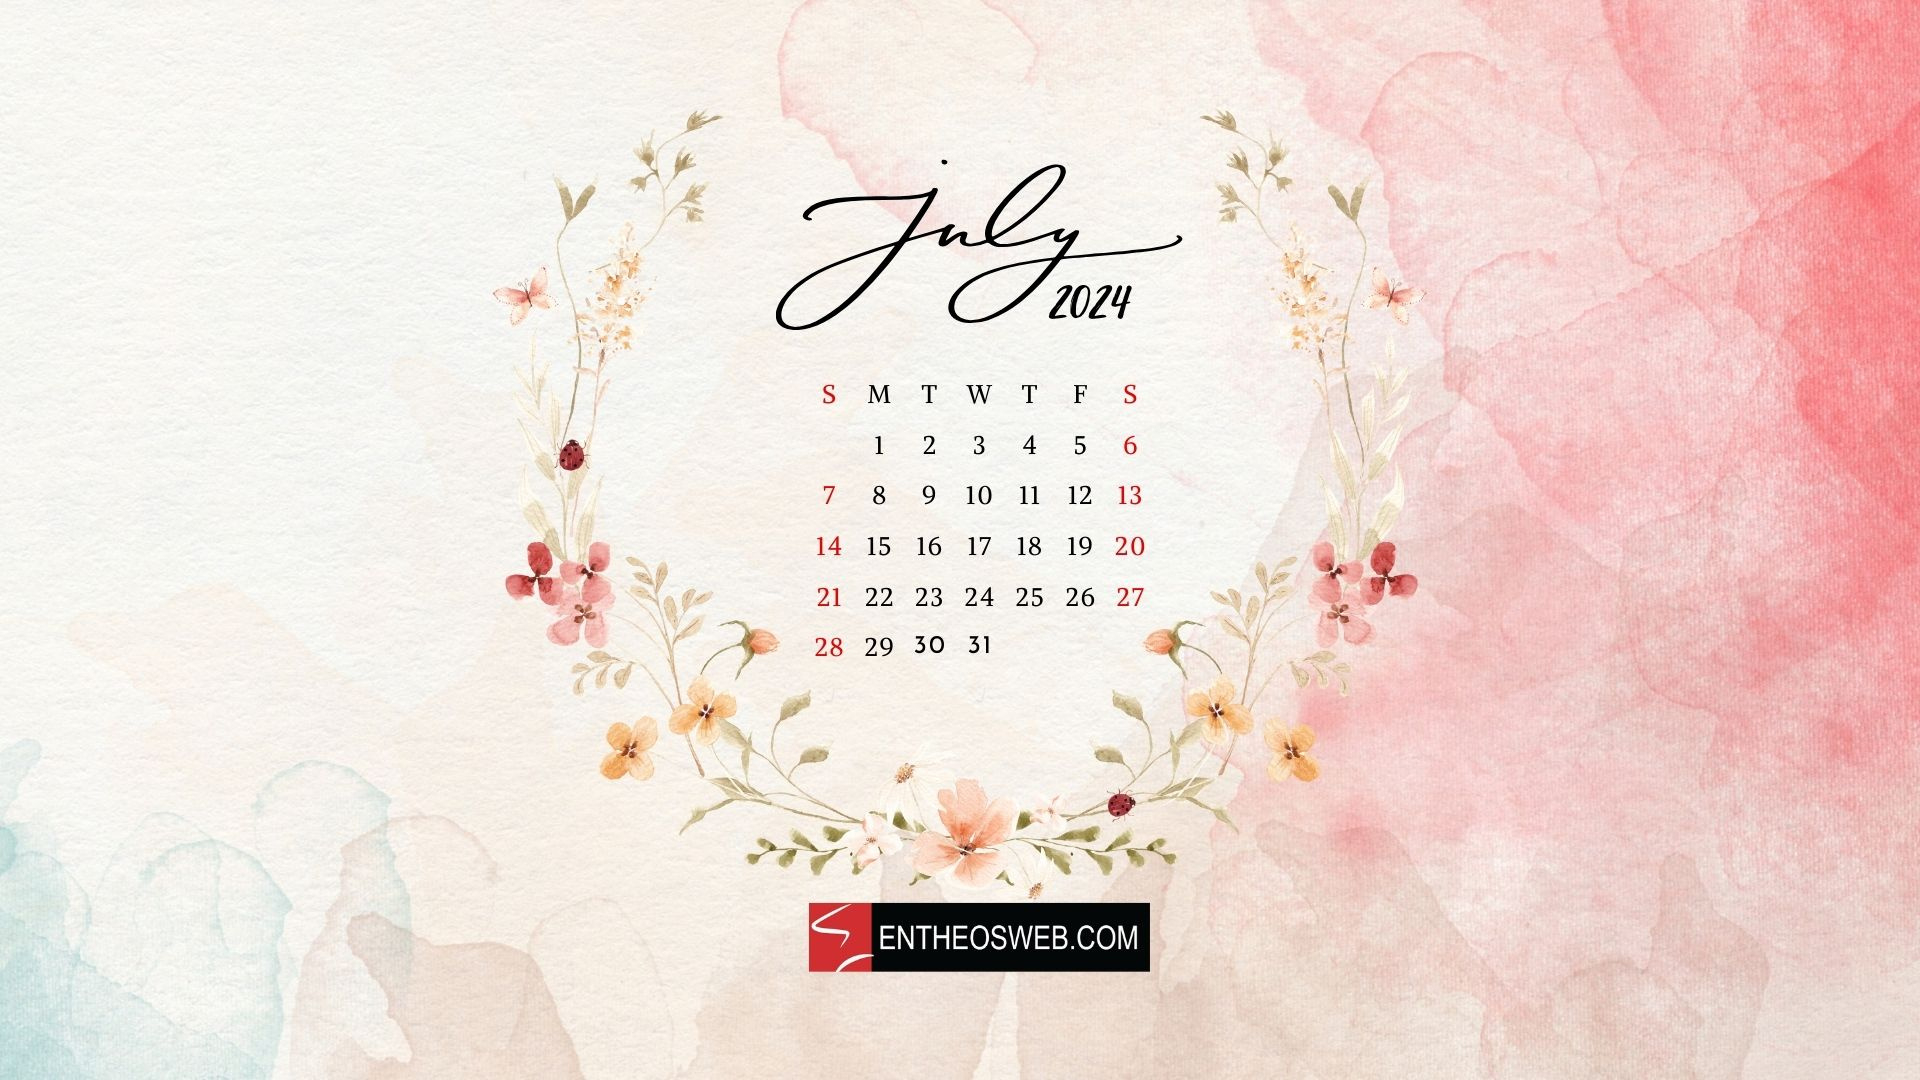 July 2024 Desktop Wallpaper Calendar | Entheosweb in July Calendar 2024 Background